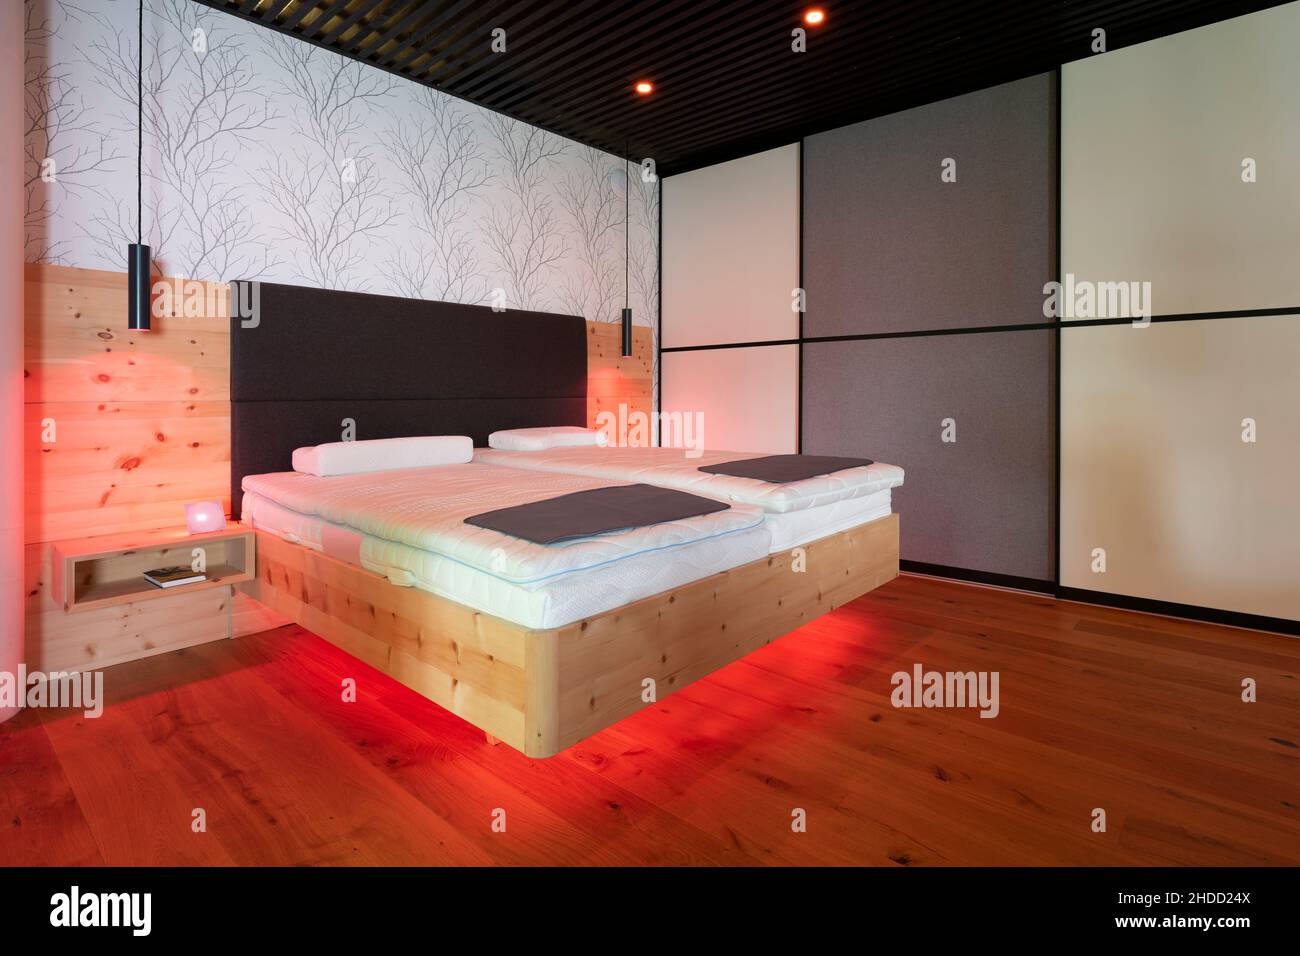 lit moderne en pin de pierre avec éclairage led, lampes suspendues et plafond à lamelles noires Banque D'Images